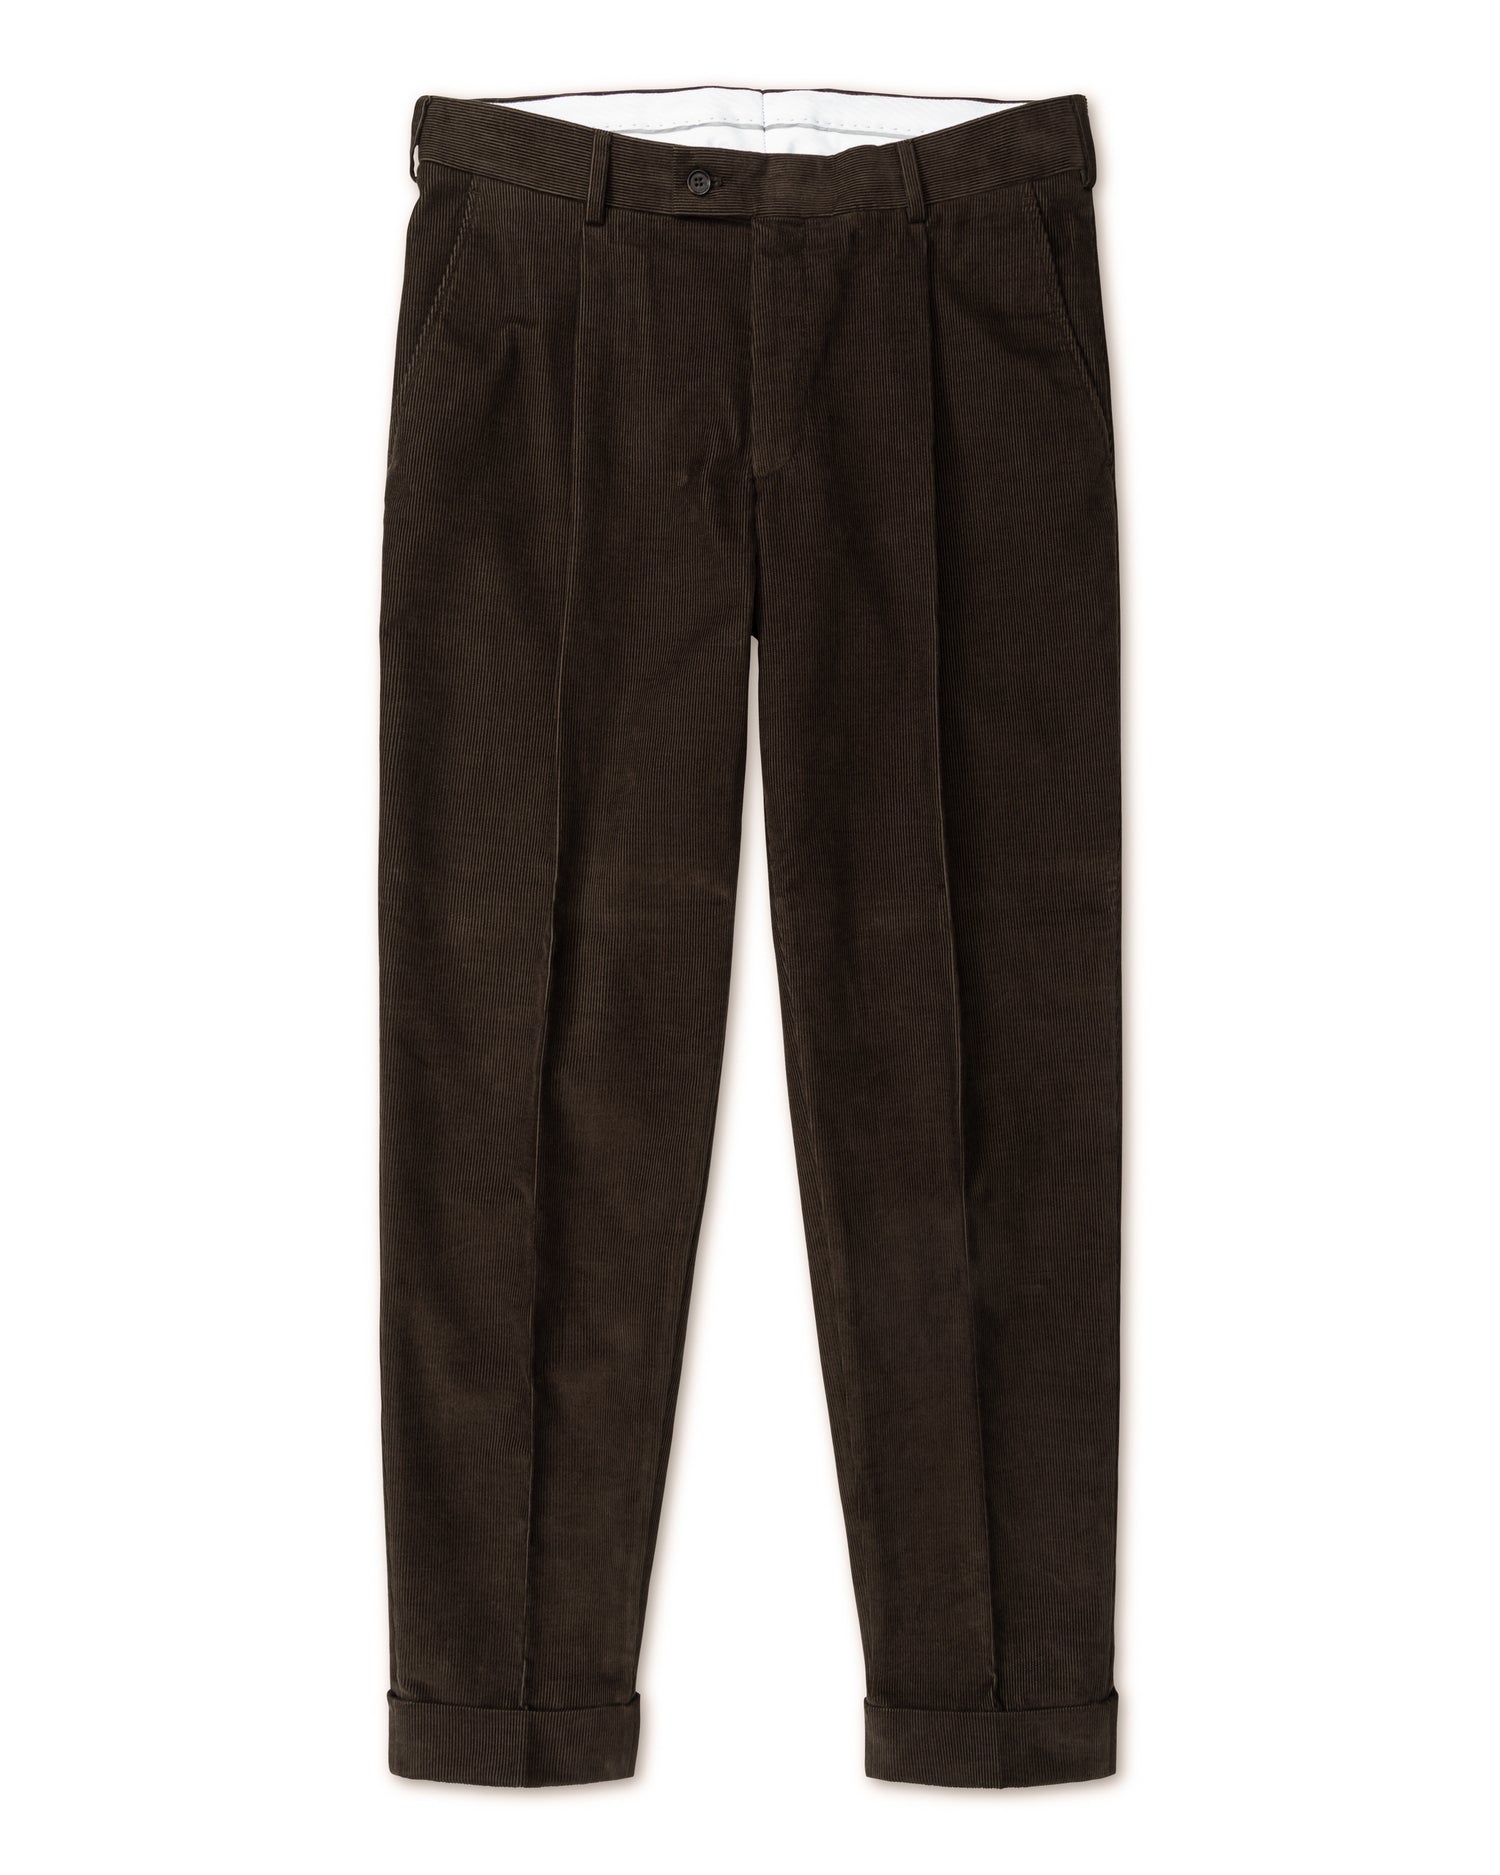 Brown Corduroy Trousers in Slim fit (8456776319306)